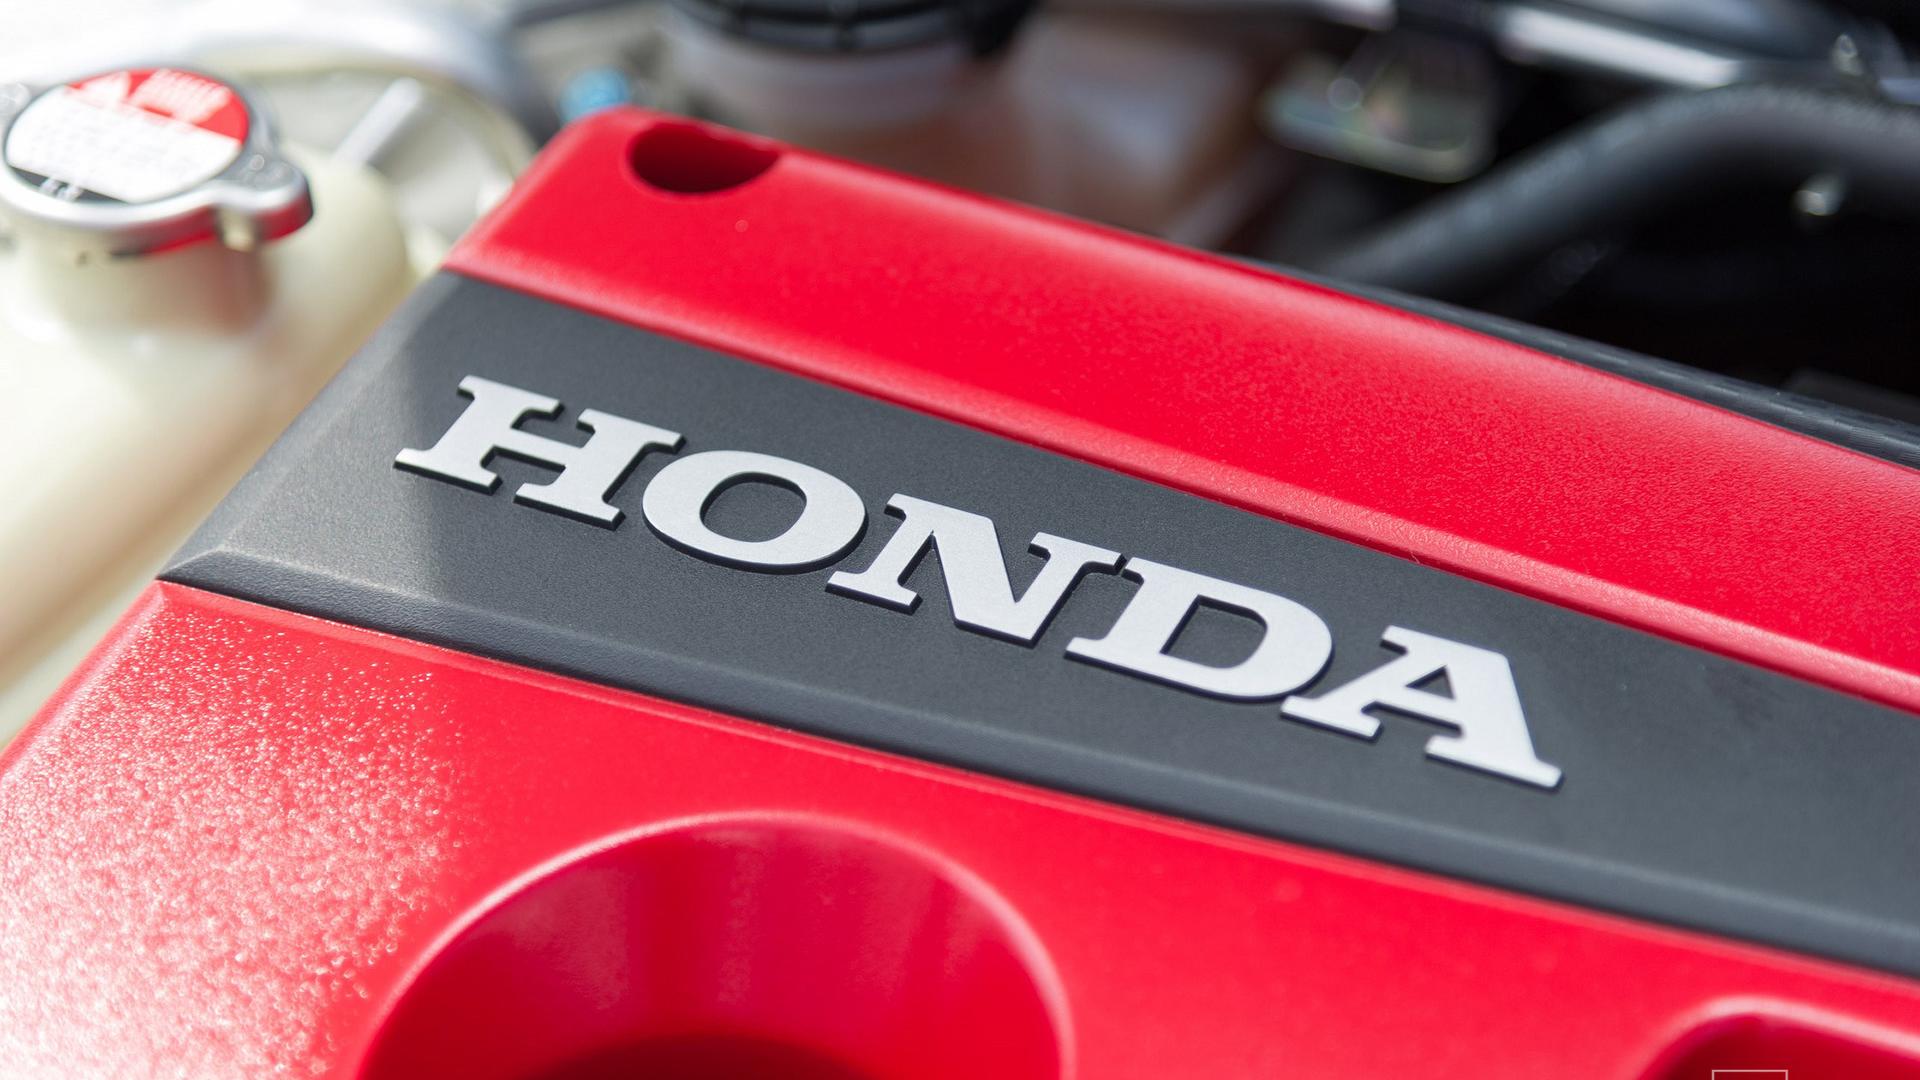 Honda Civic Type R 2017 detayl resim galerisi